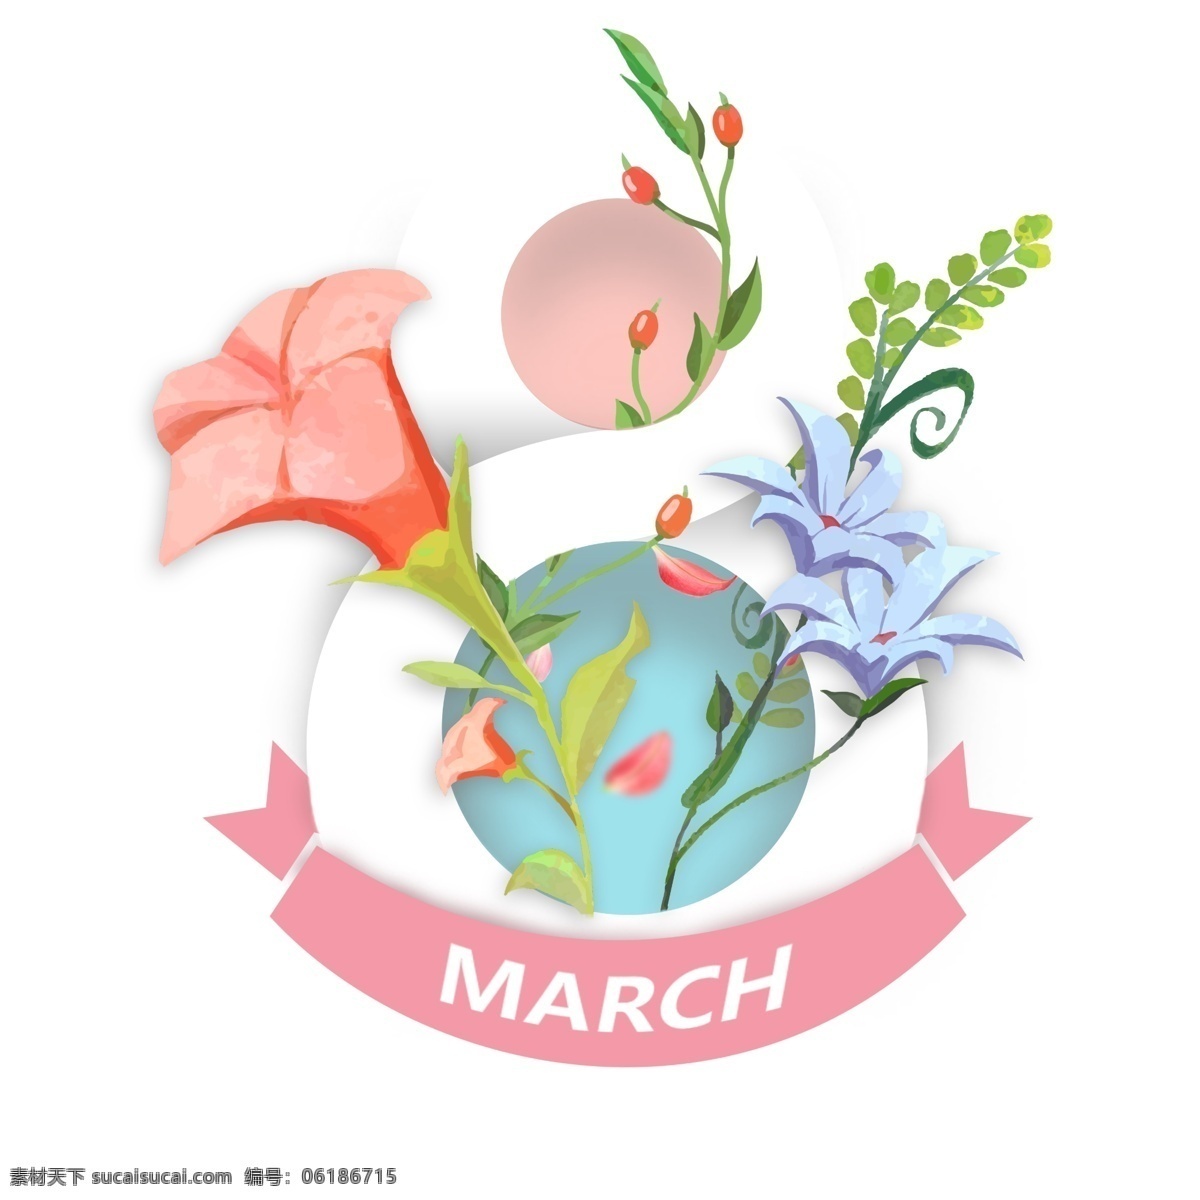 月 日 女人 天 38岁的女性 女性日快乐 3月3日 花 花卉 树叶